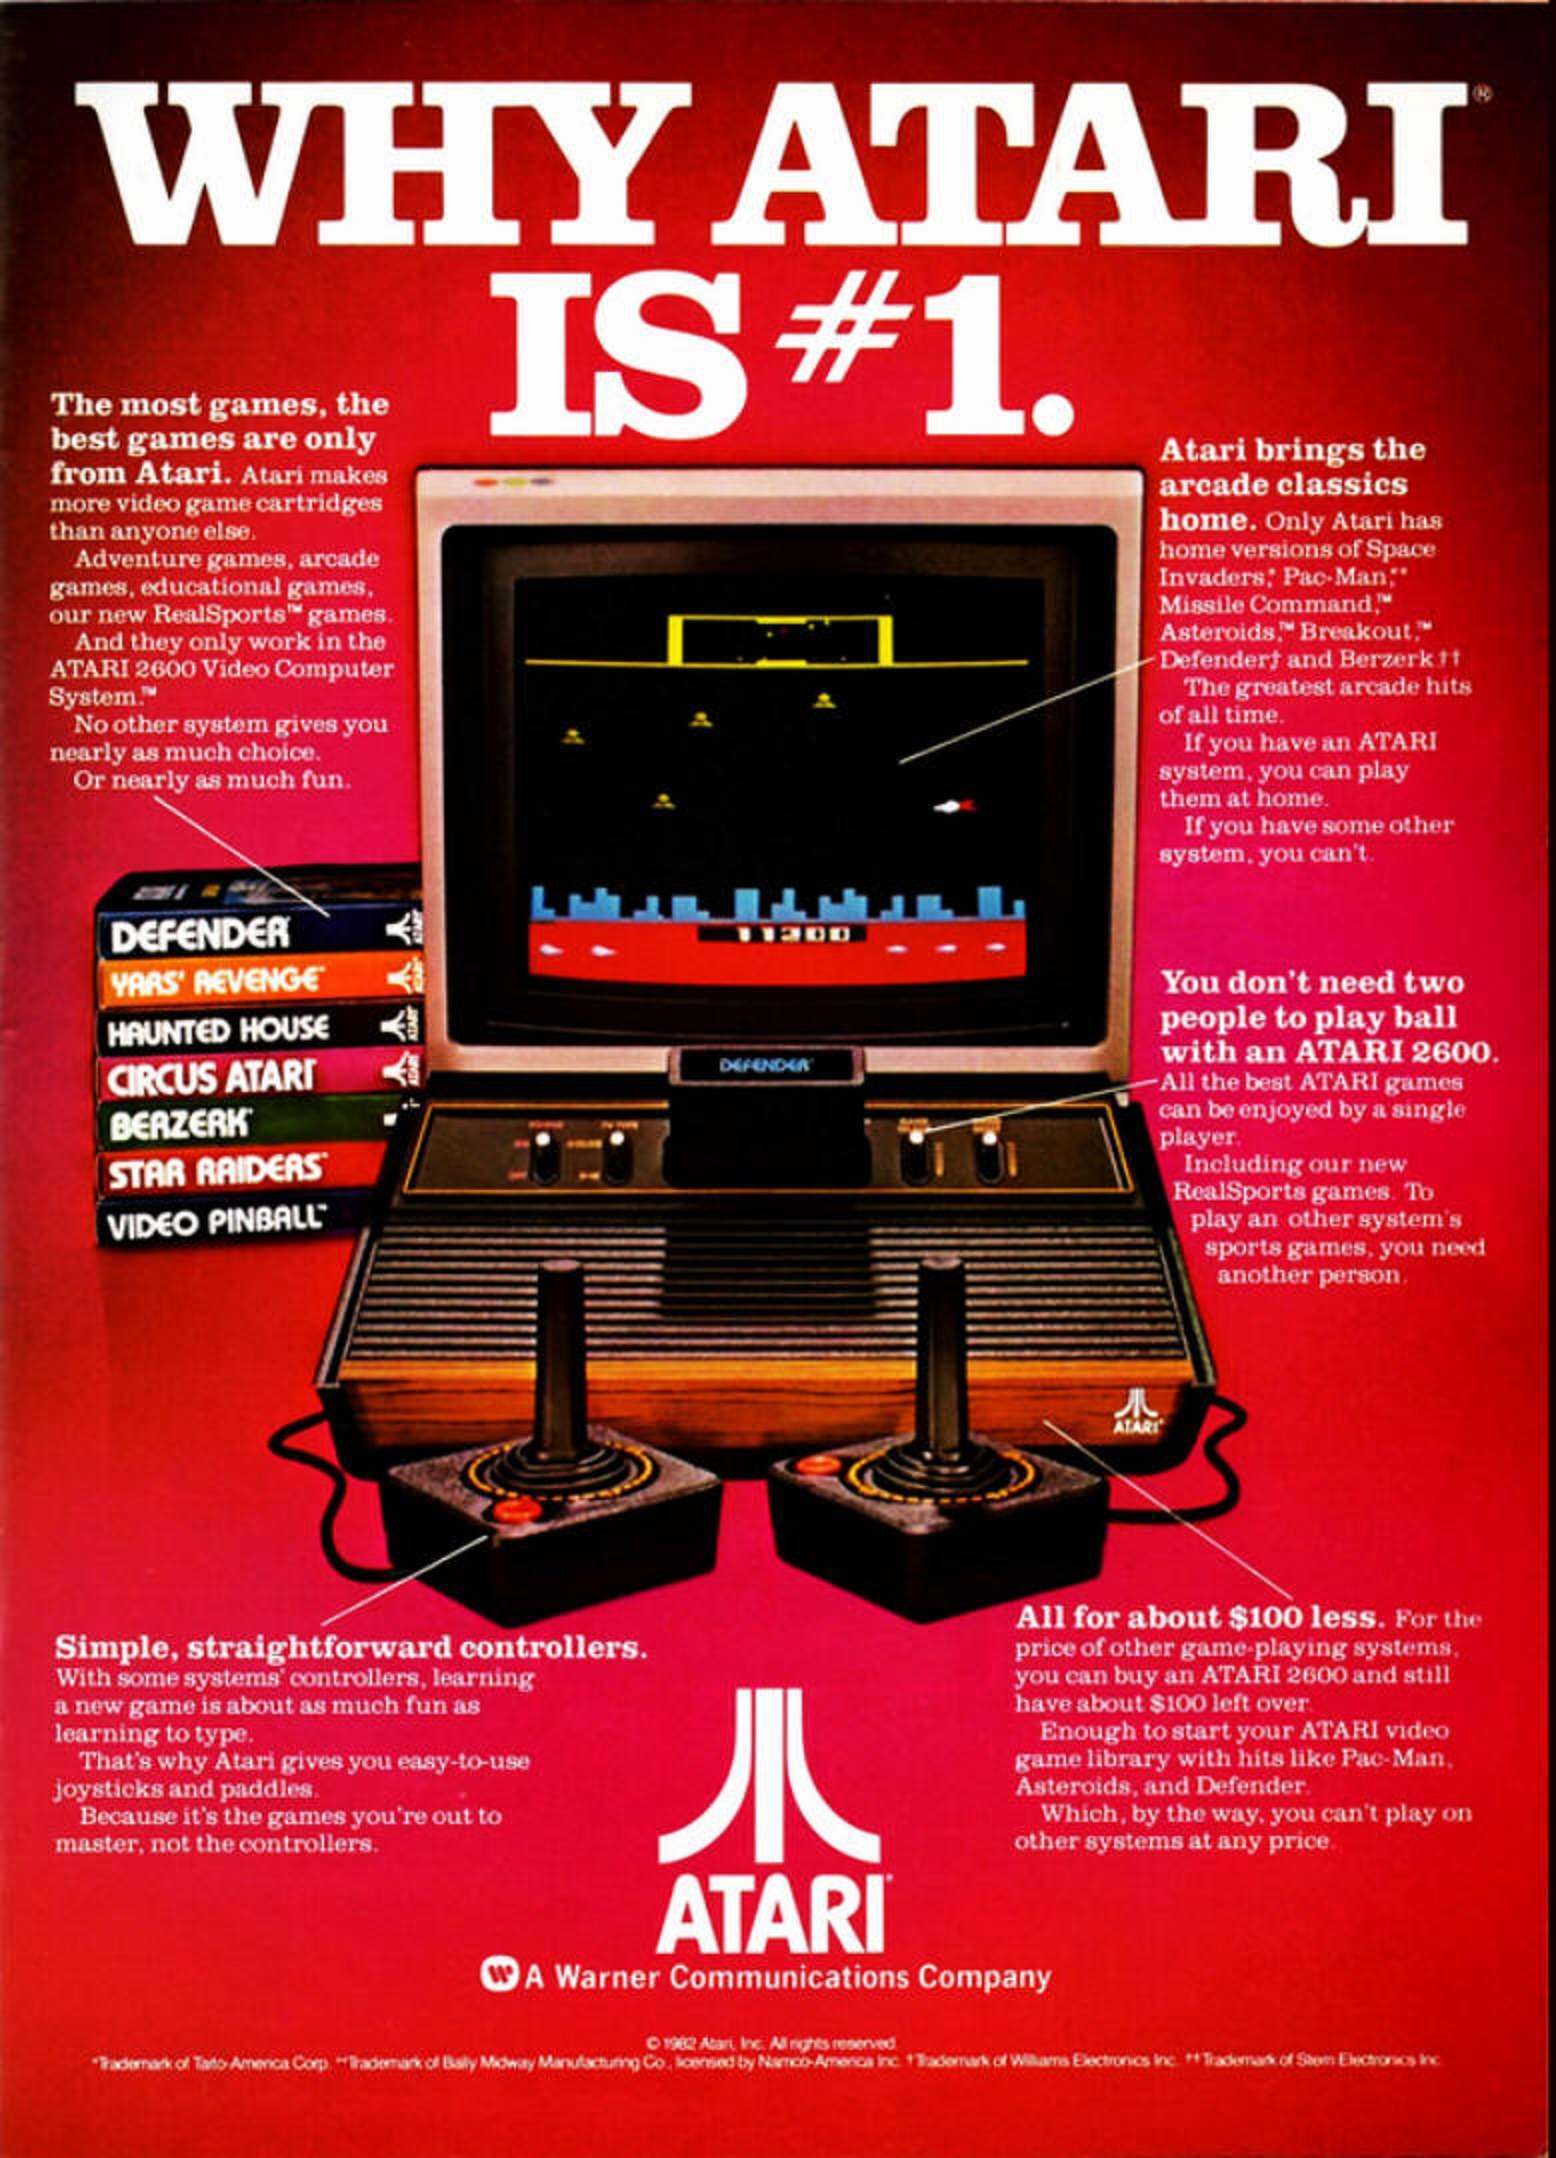 More Games More Fun Remembering The Atari Vcs 1978